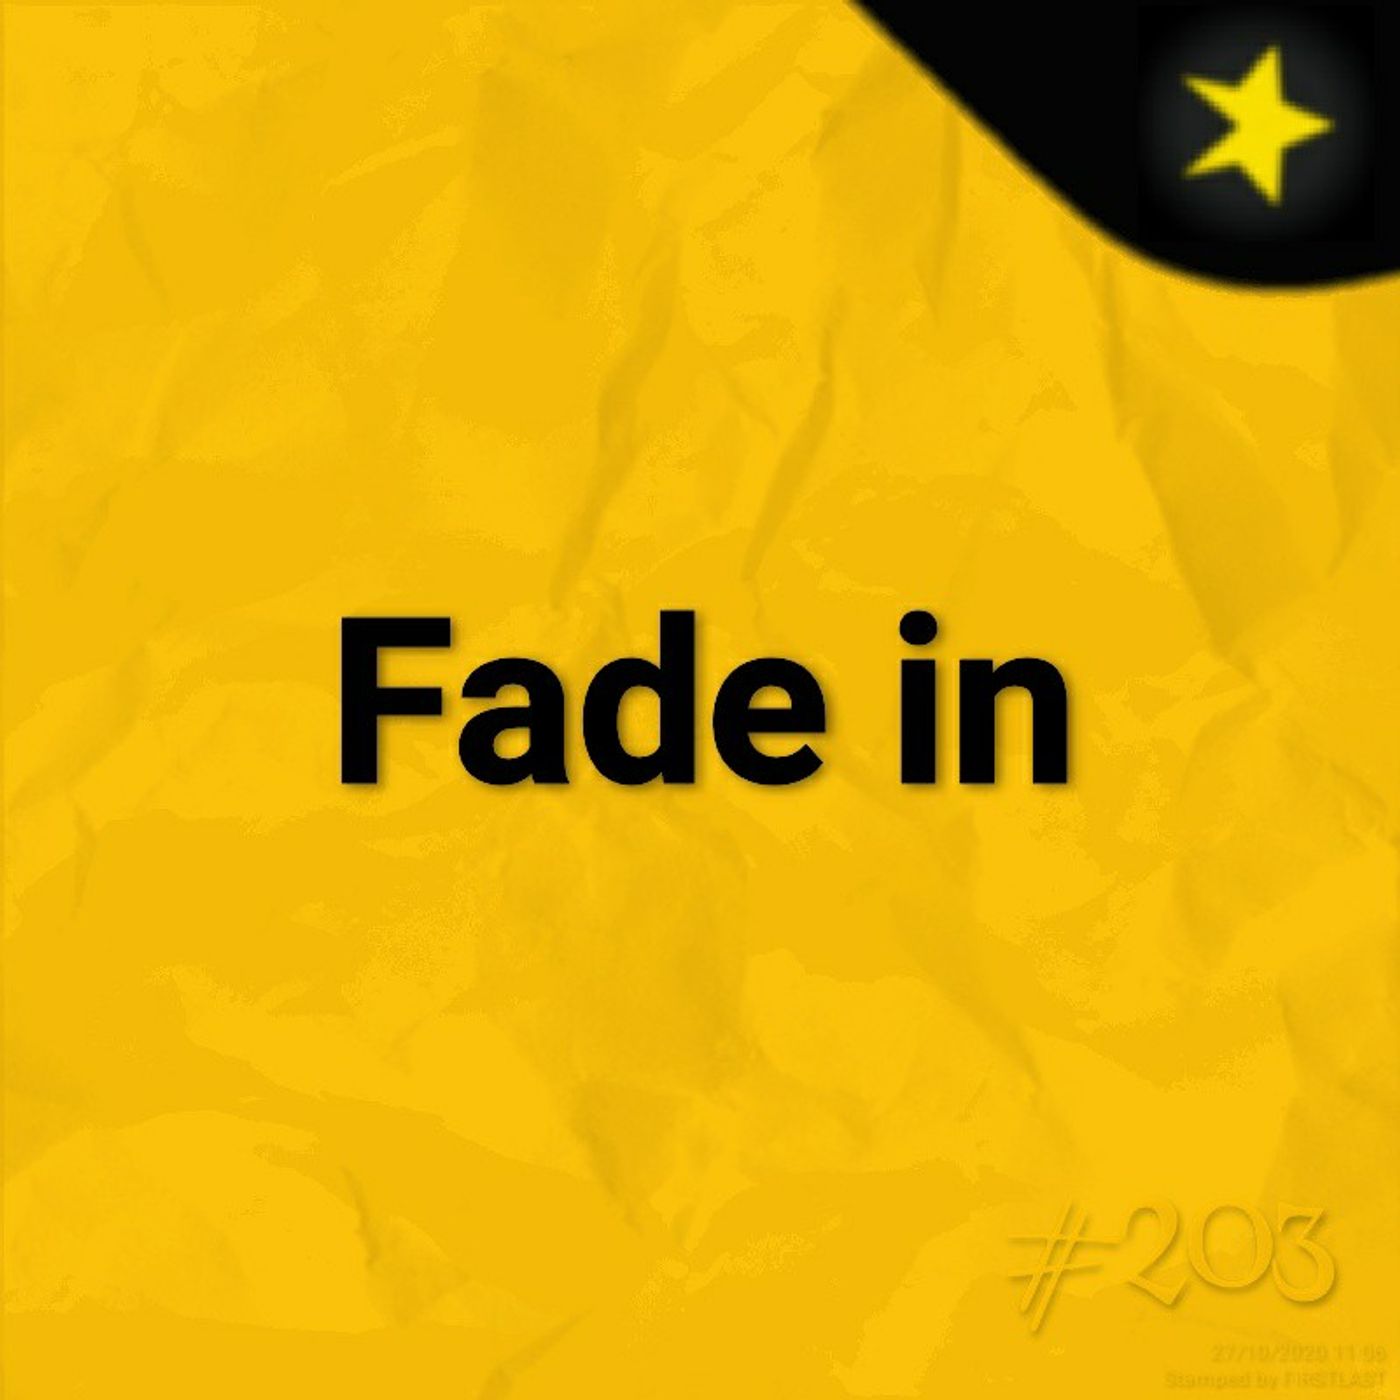 Fade in (#203)